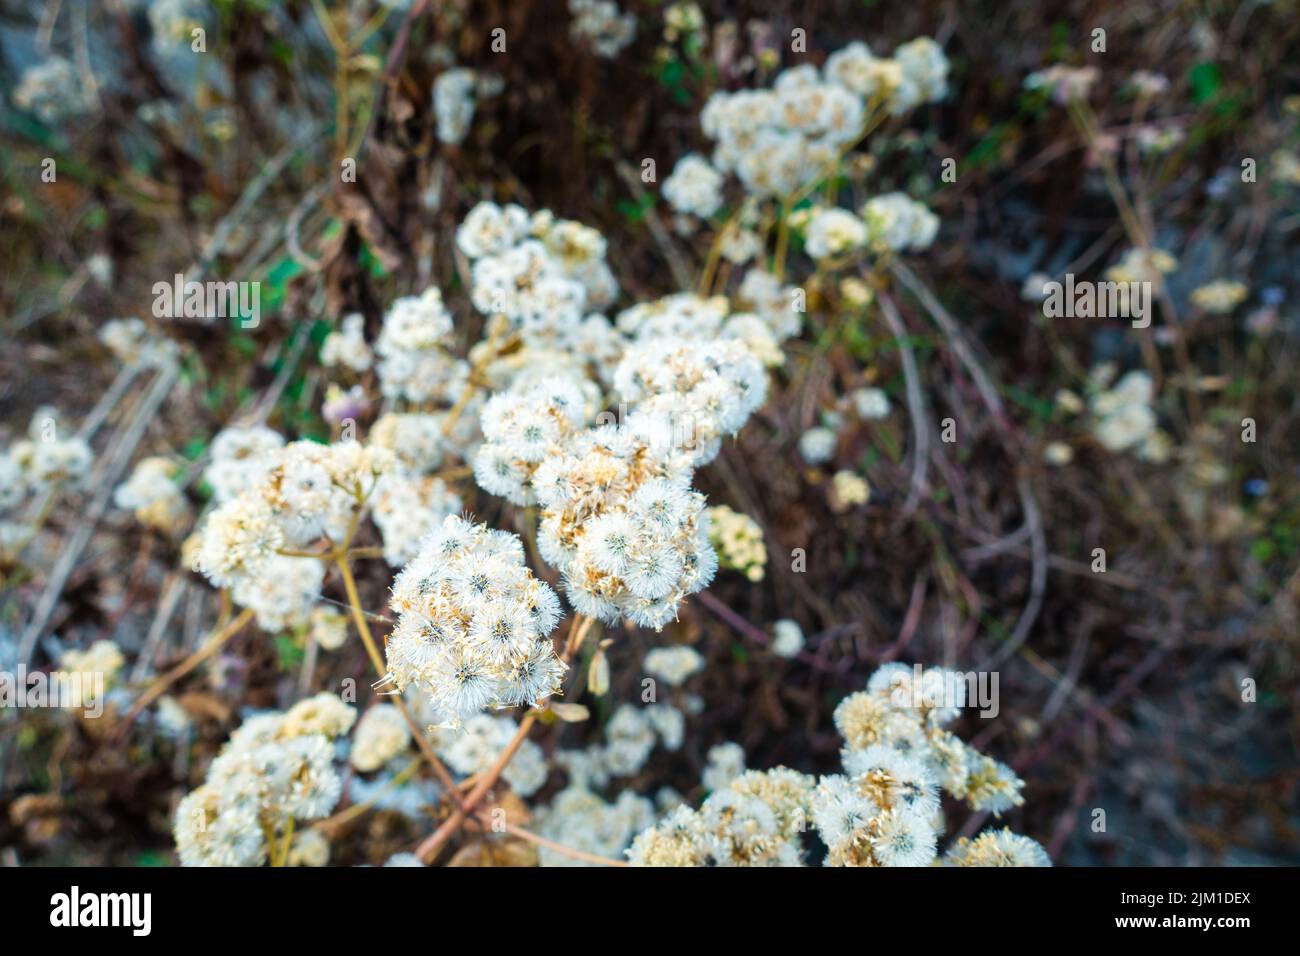 Le Petasites frigidus, le pied-de-Cordière arctique ou butterbur arctique, est une espèce de plantes à fleurs de la famille des Asteraceae. Uttarakhand Inde. Banque D'Images